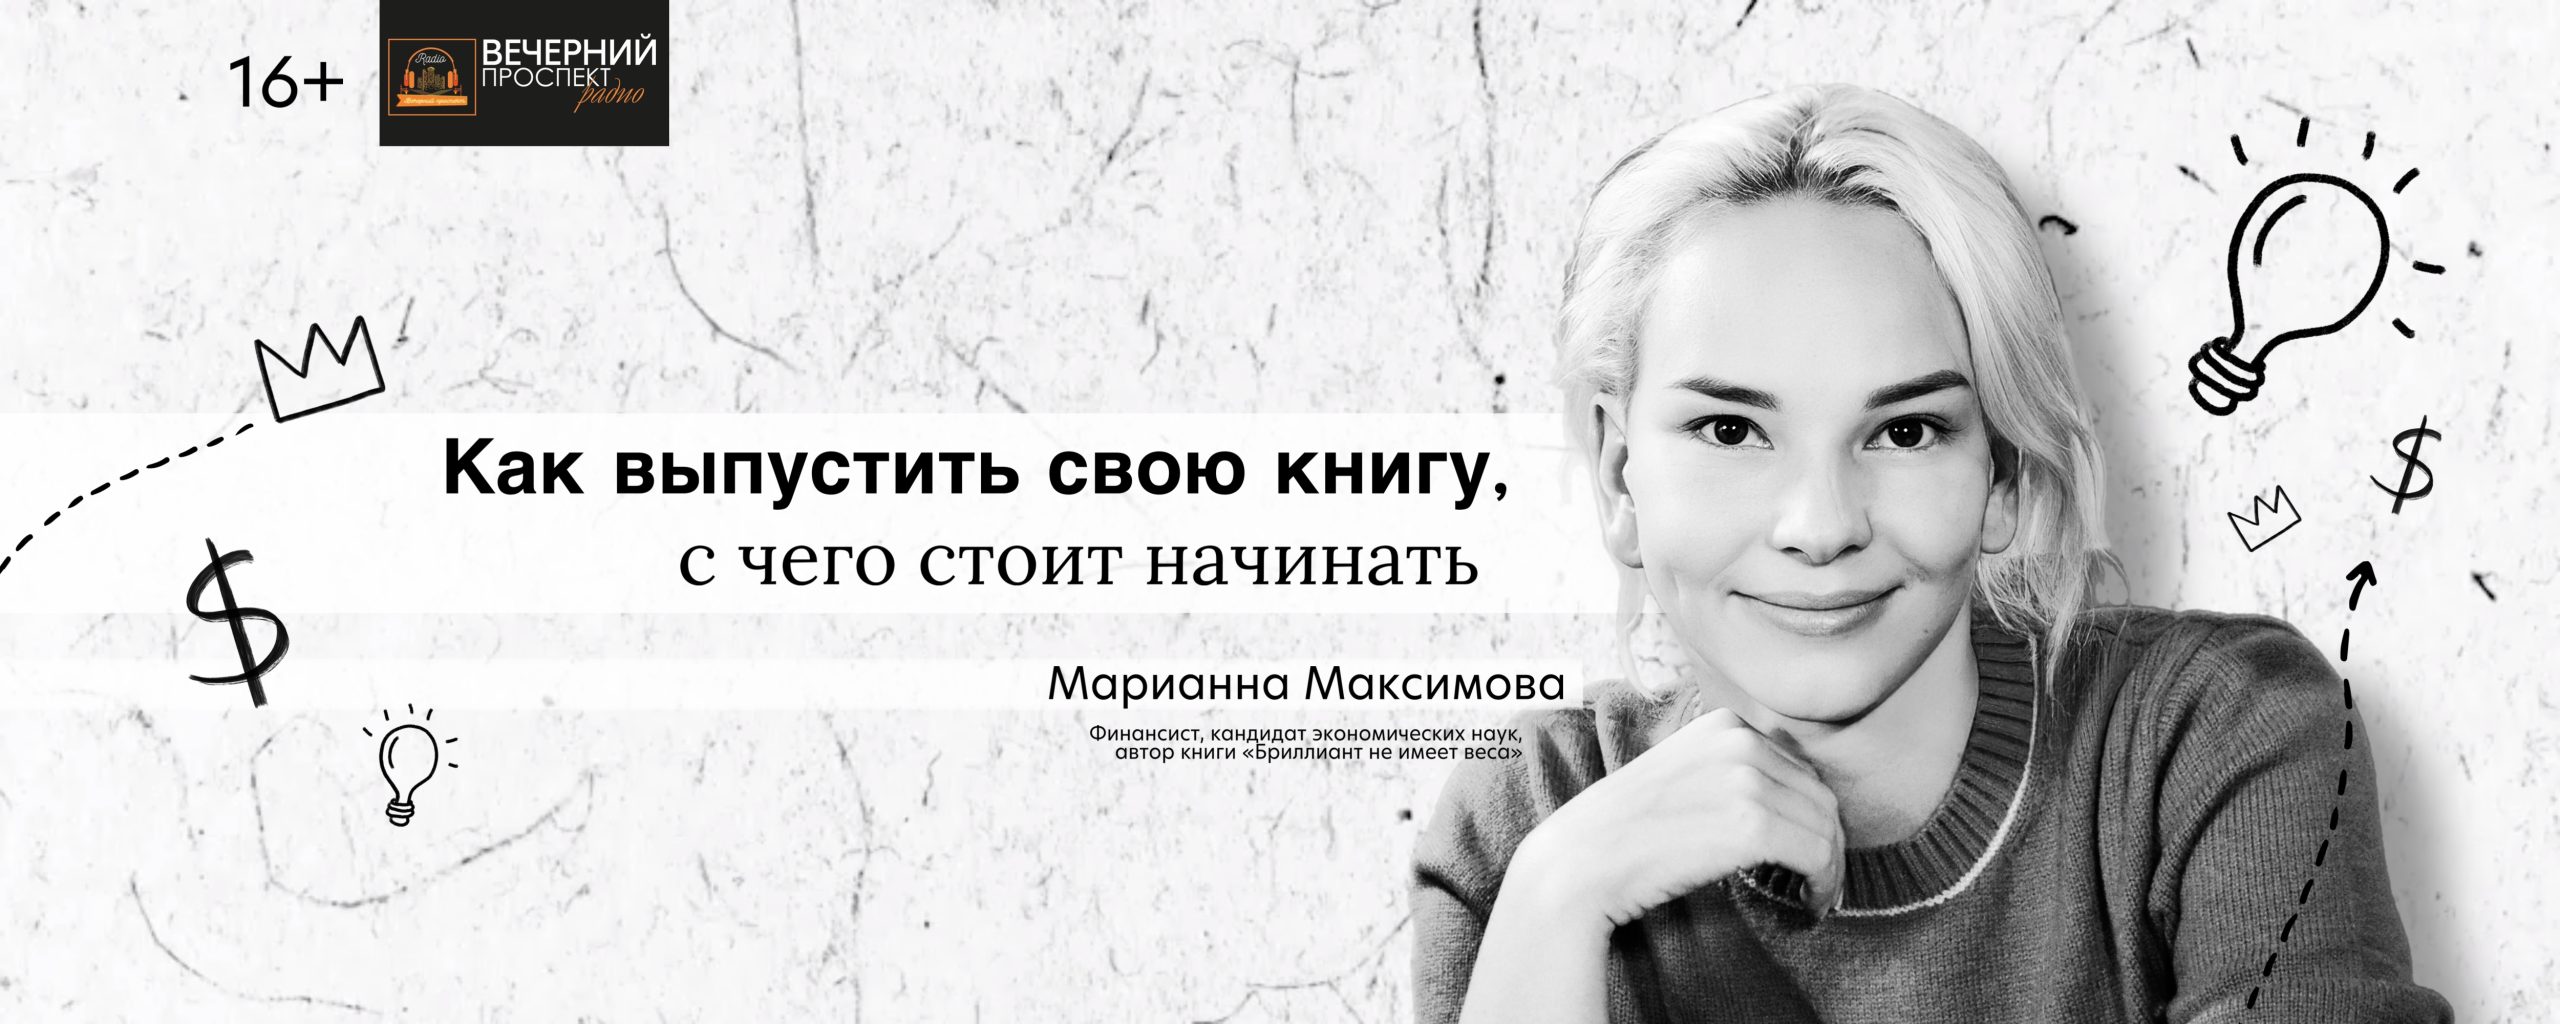 Автор книги «Бриллиант не имеет веса» Марианна Максимова о том, как выпустить свою книгу, с чего стоит начинать и сколько на этом можно заработать.